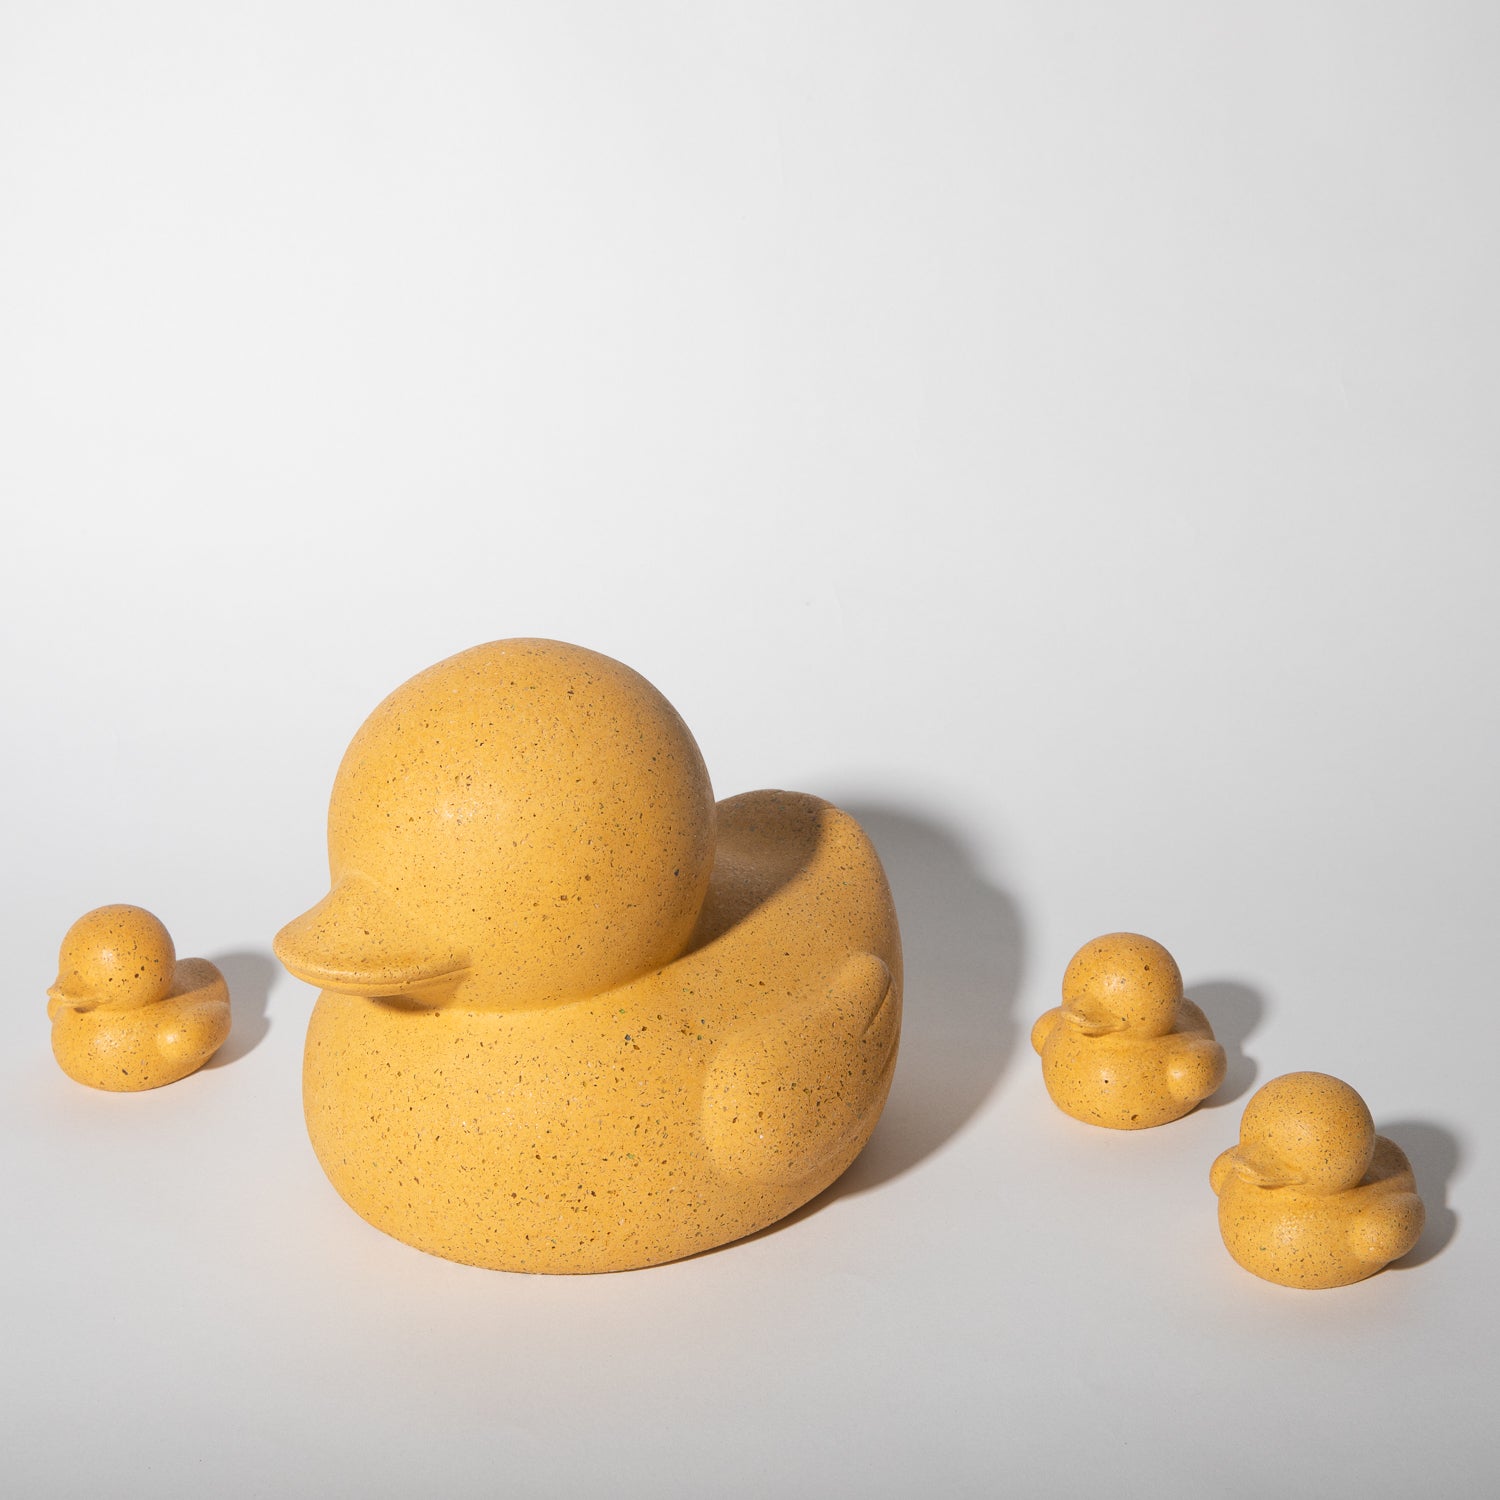 Large and mini "rubber" duckies in marigold terrazzo.